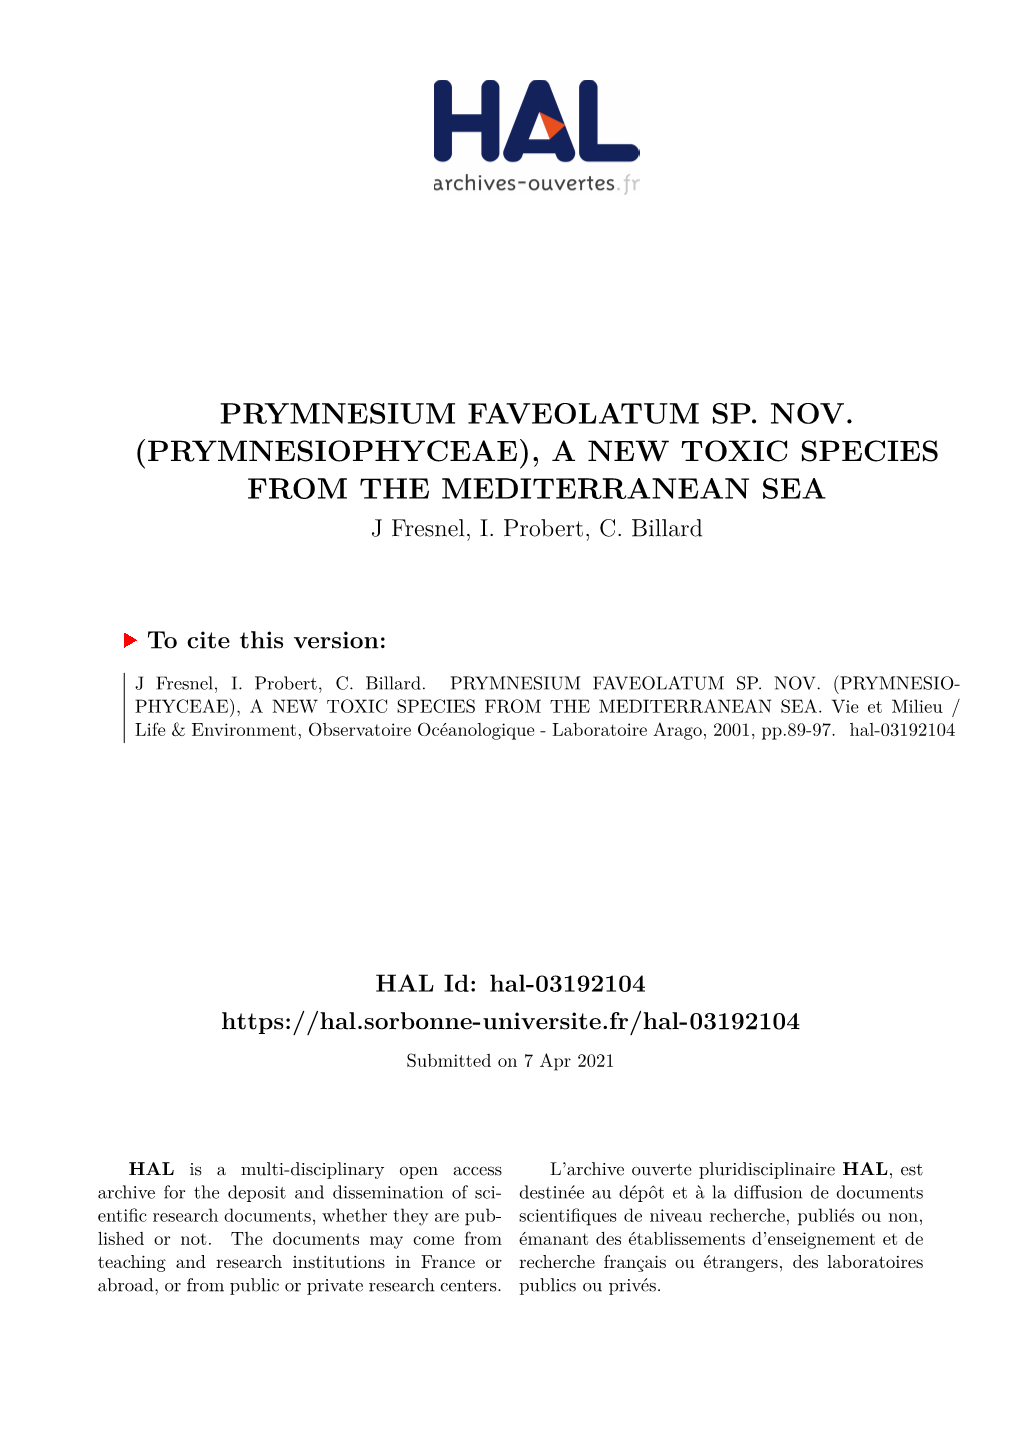 PRYMNESIUM FAVEOLATUM SP. NOV. (PRYMNESIOPHYCEAE), a NEW TOXIC SPECIES from the MEDITERRANEAN SEA J Fresnel, I